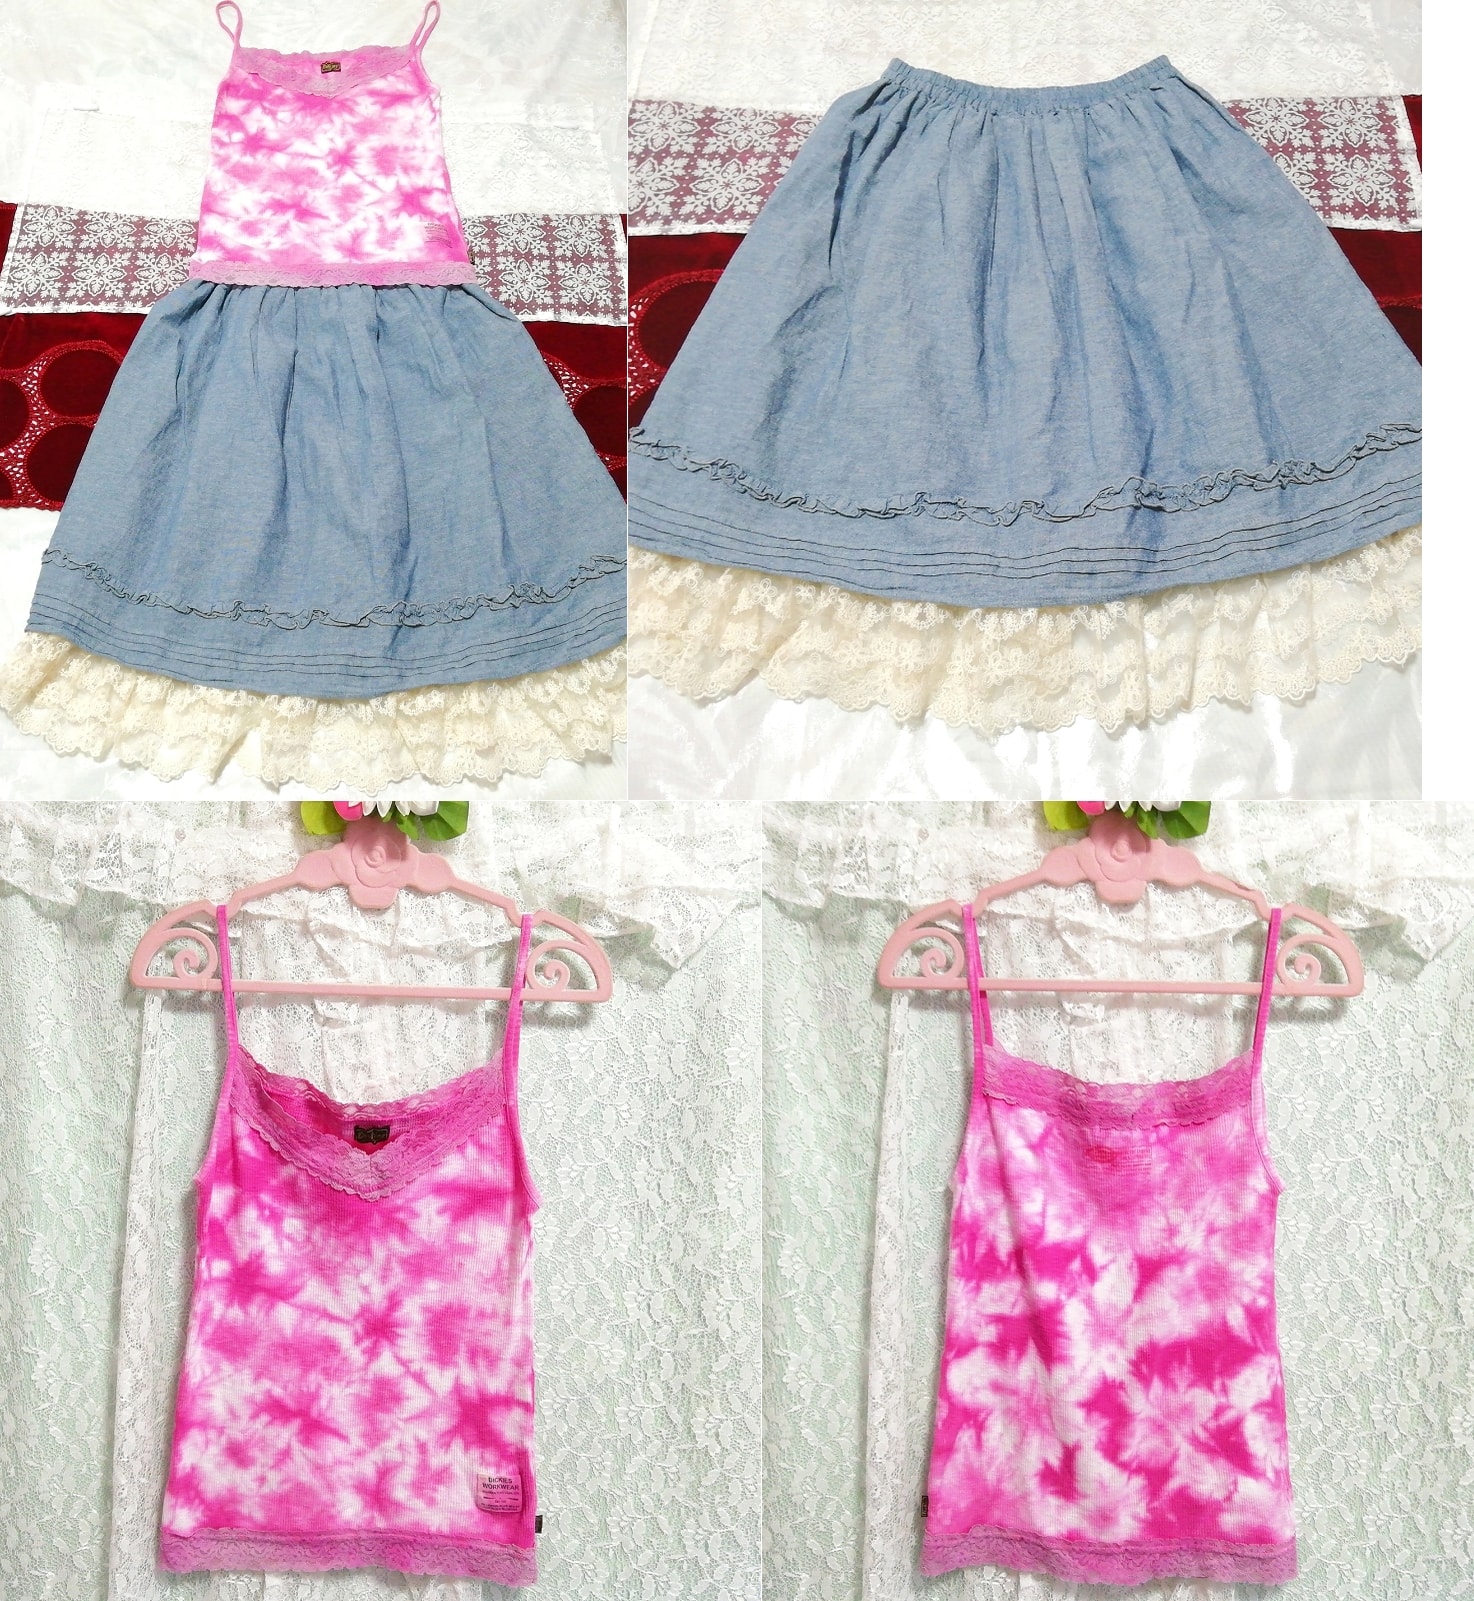 Rosa Spitzen-Baumwoll-Camisole-Negligé-Nachthemd, Denim-weißer Spitzenrock, 2 Stück, Mode, Frauenmode, Nachtwäsche, Pyjama